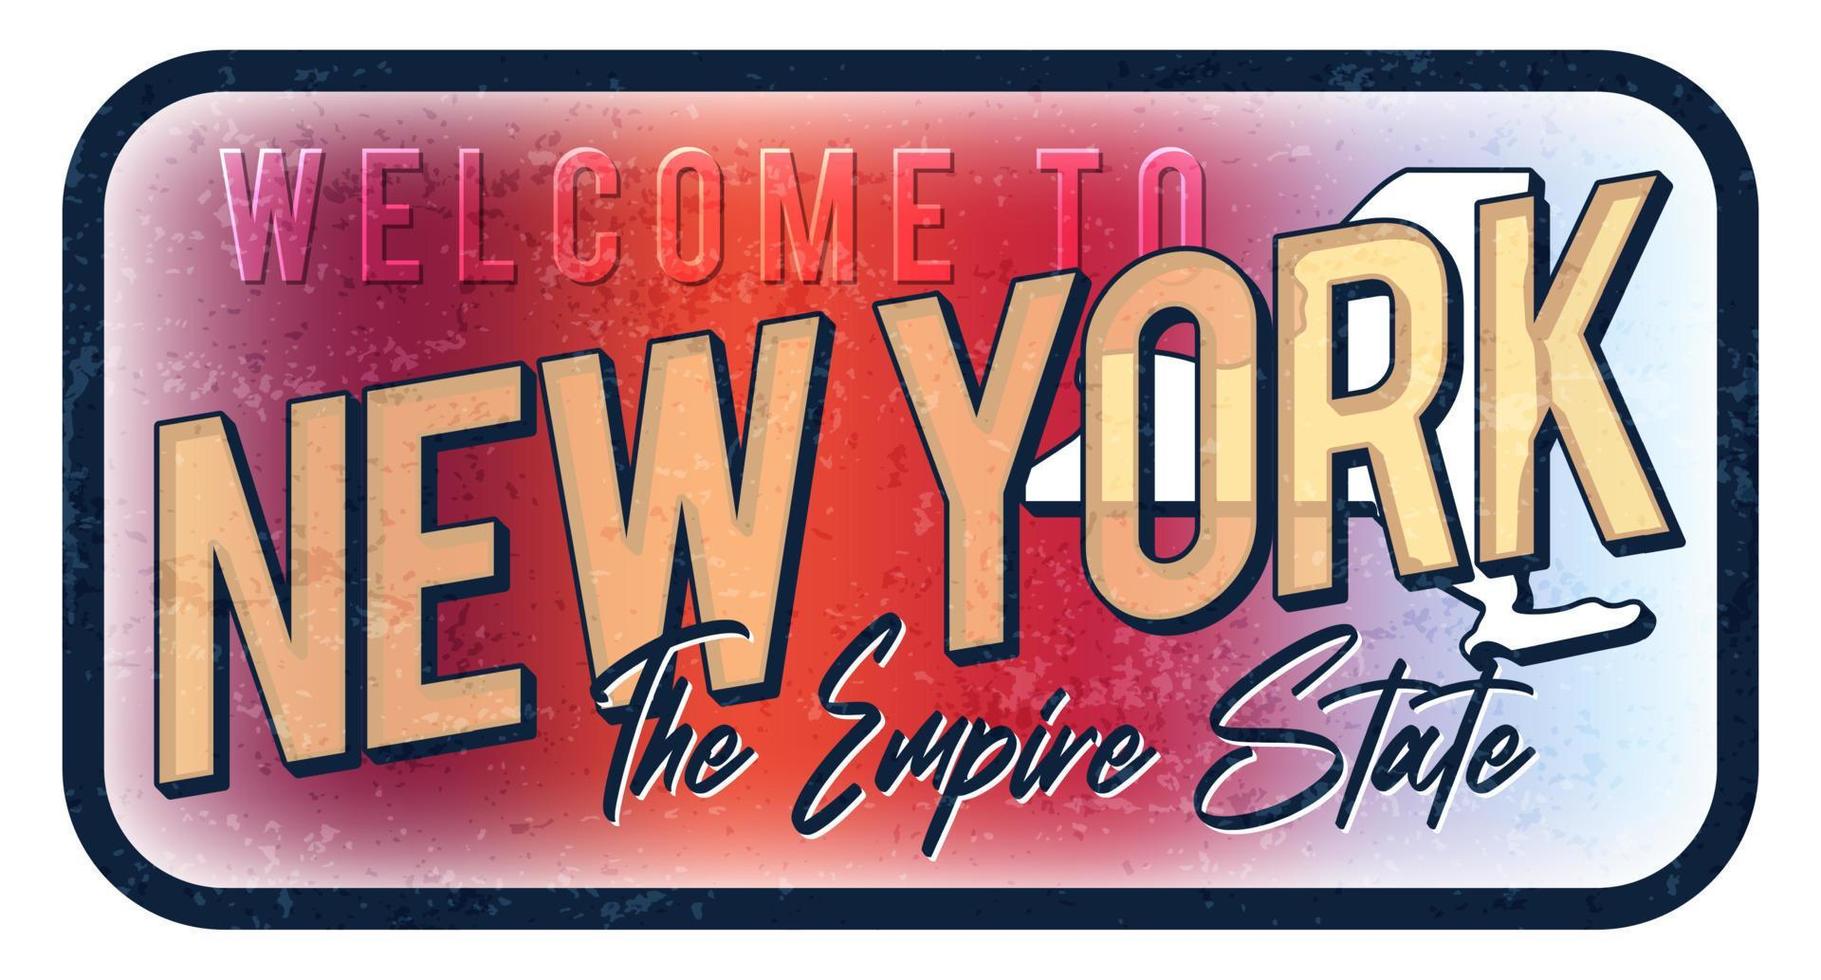 bienvenue à new york illustration vectorielle de signe de métal rouillé vintage. carte d'état de vecteur dans le style grunge avec typographie lettrage dessiné à la main.